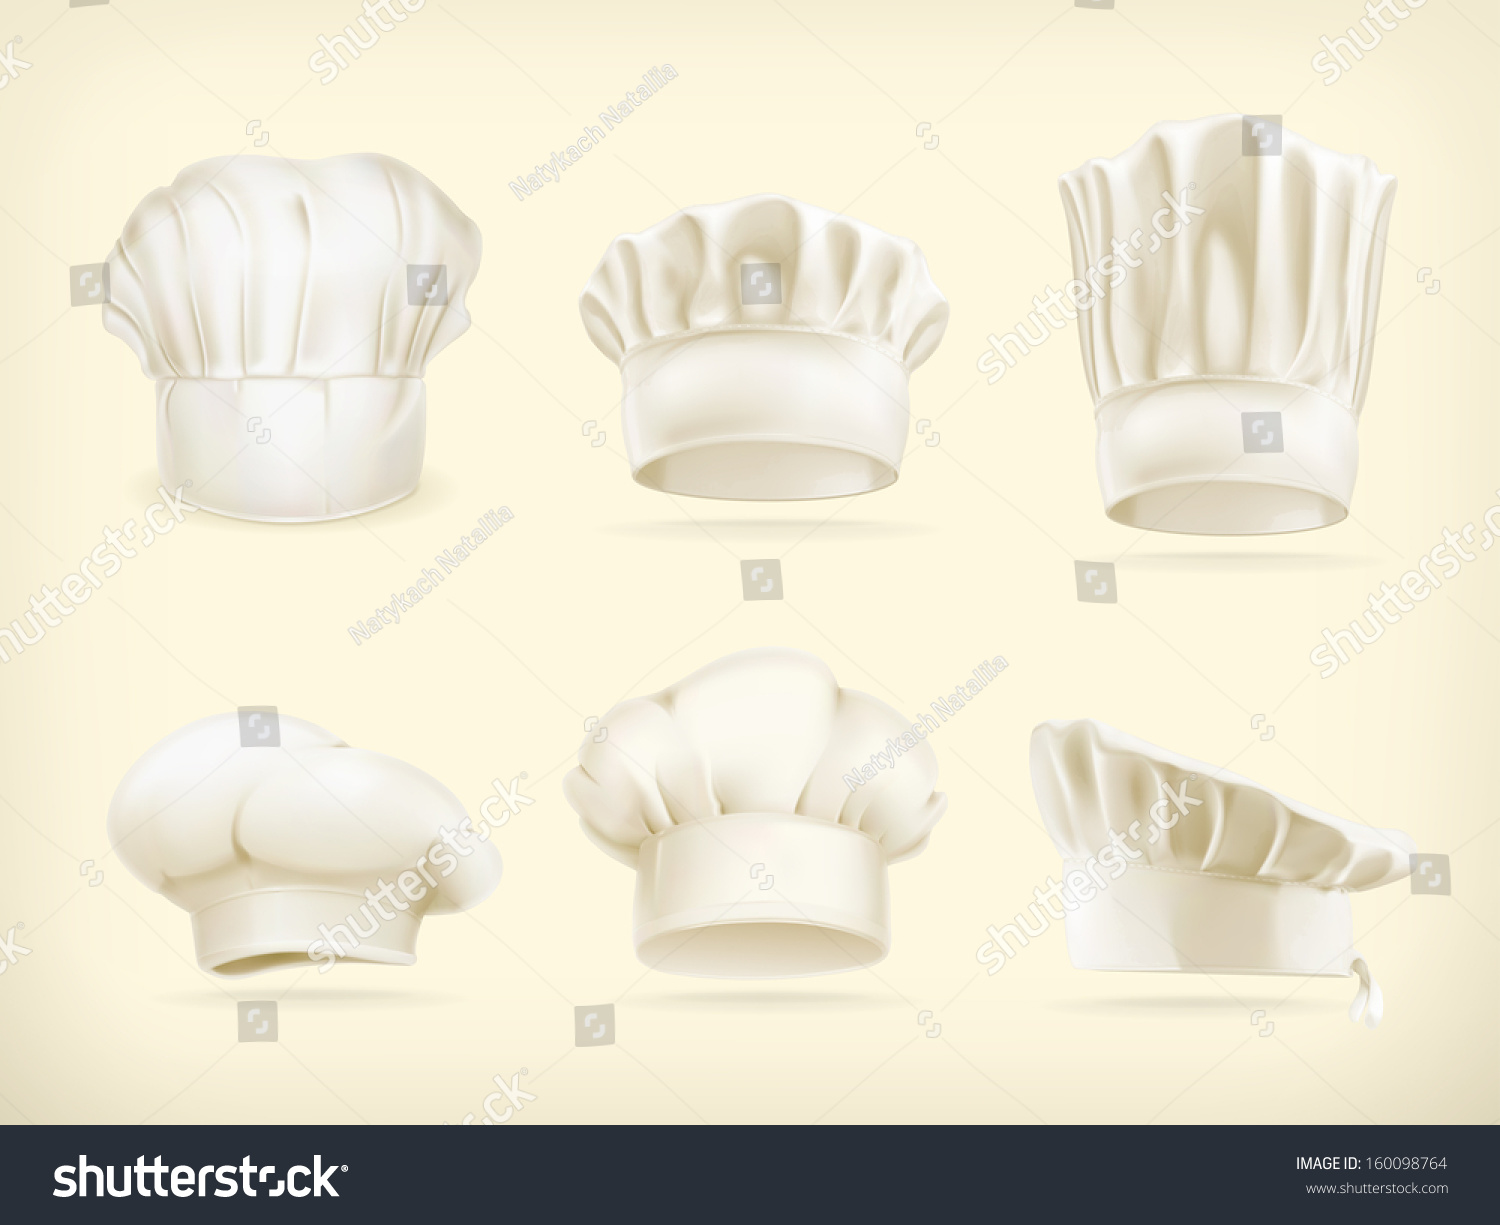 Chef Hats Vector Set - 160098764 : Shutterstock